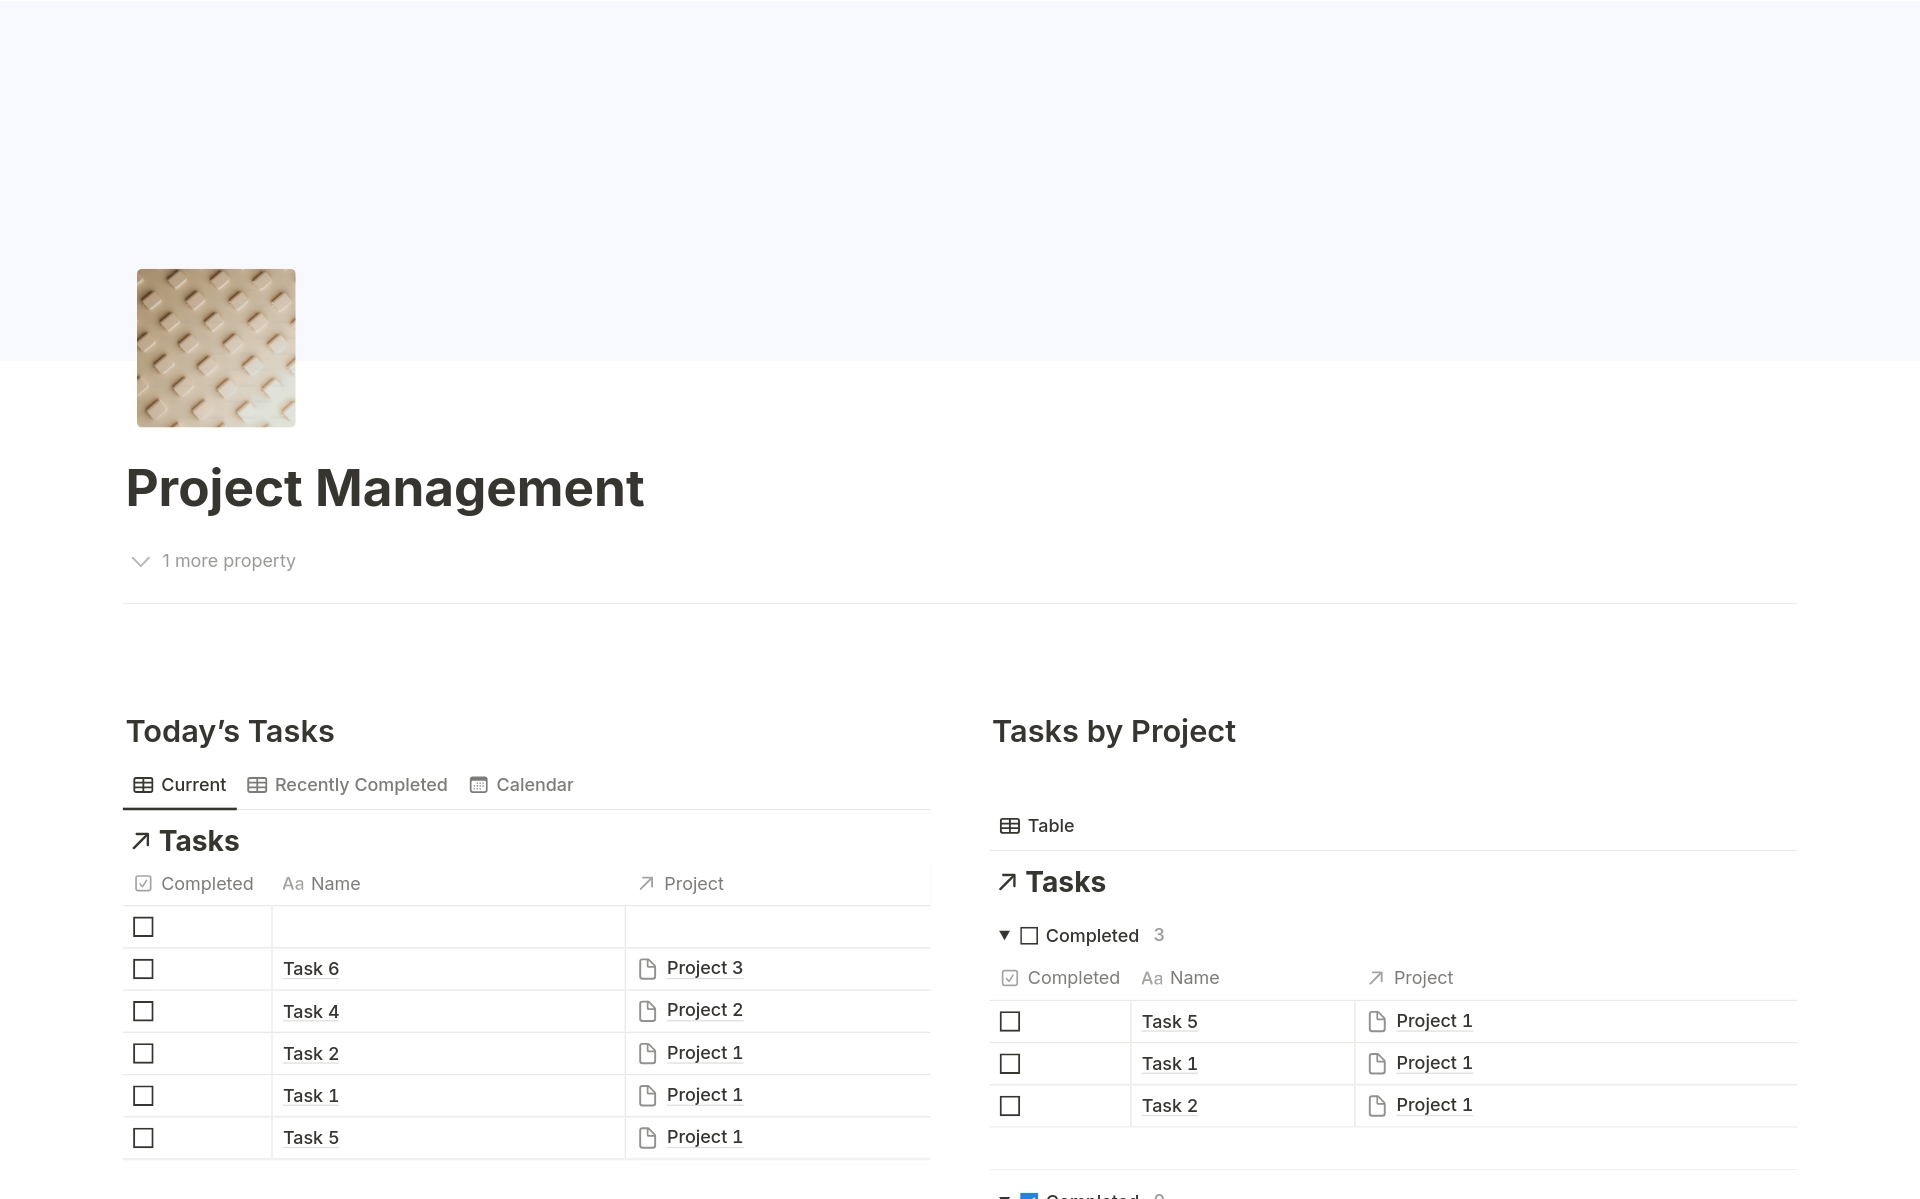 Uma prévia do modelo para Project Management System 